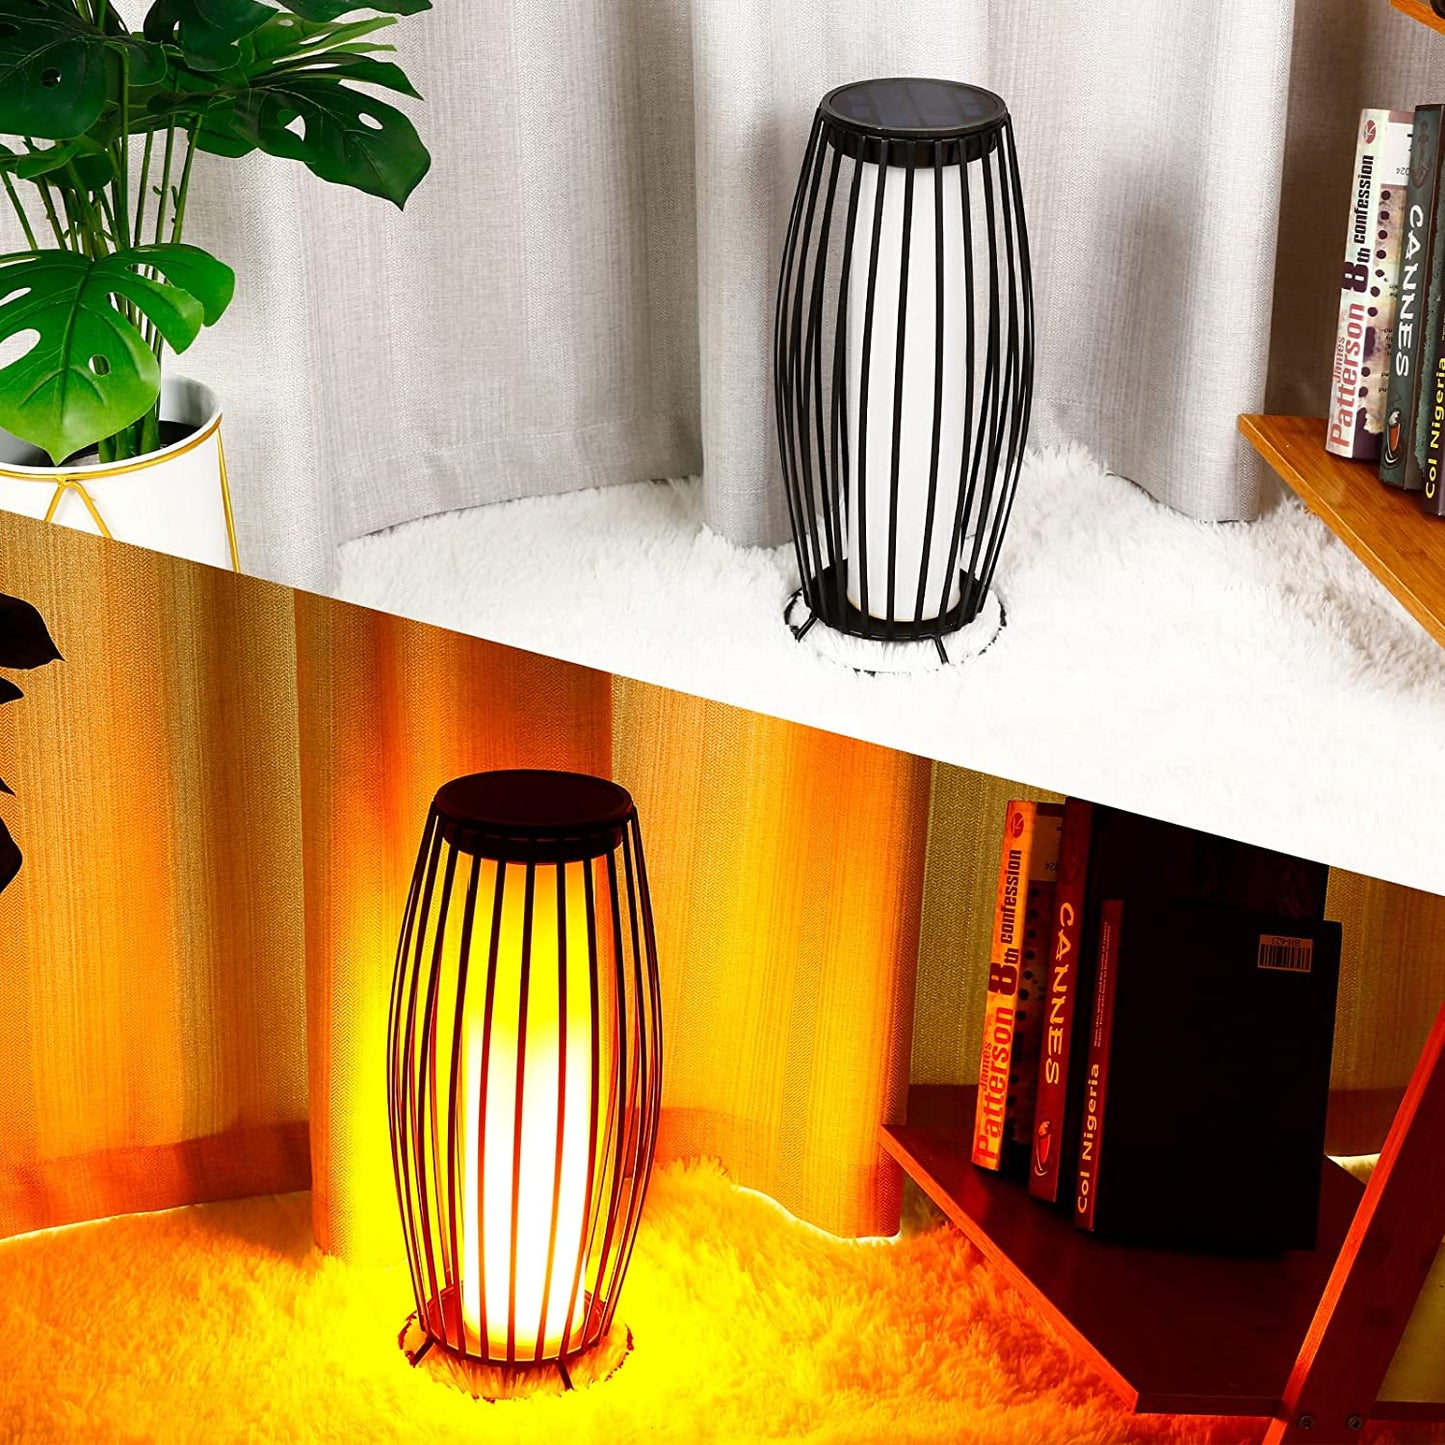 Outdoor&Indoor Solar Lantern Floor Lamp, Waterproof Solar Flickering Flame Light for Garden Decoration, Metal Solar USB Rechargeable Lamp Solar Outdoor Torch Lights(Black)